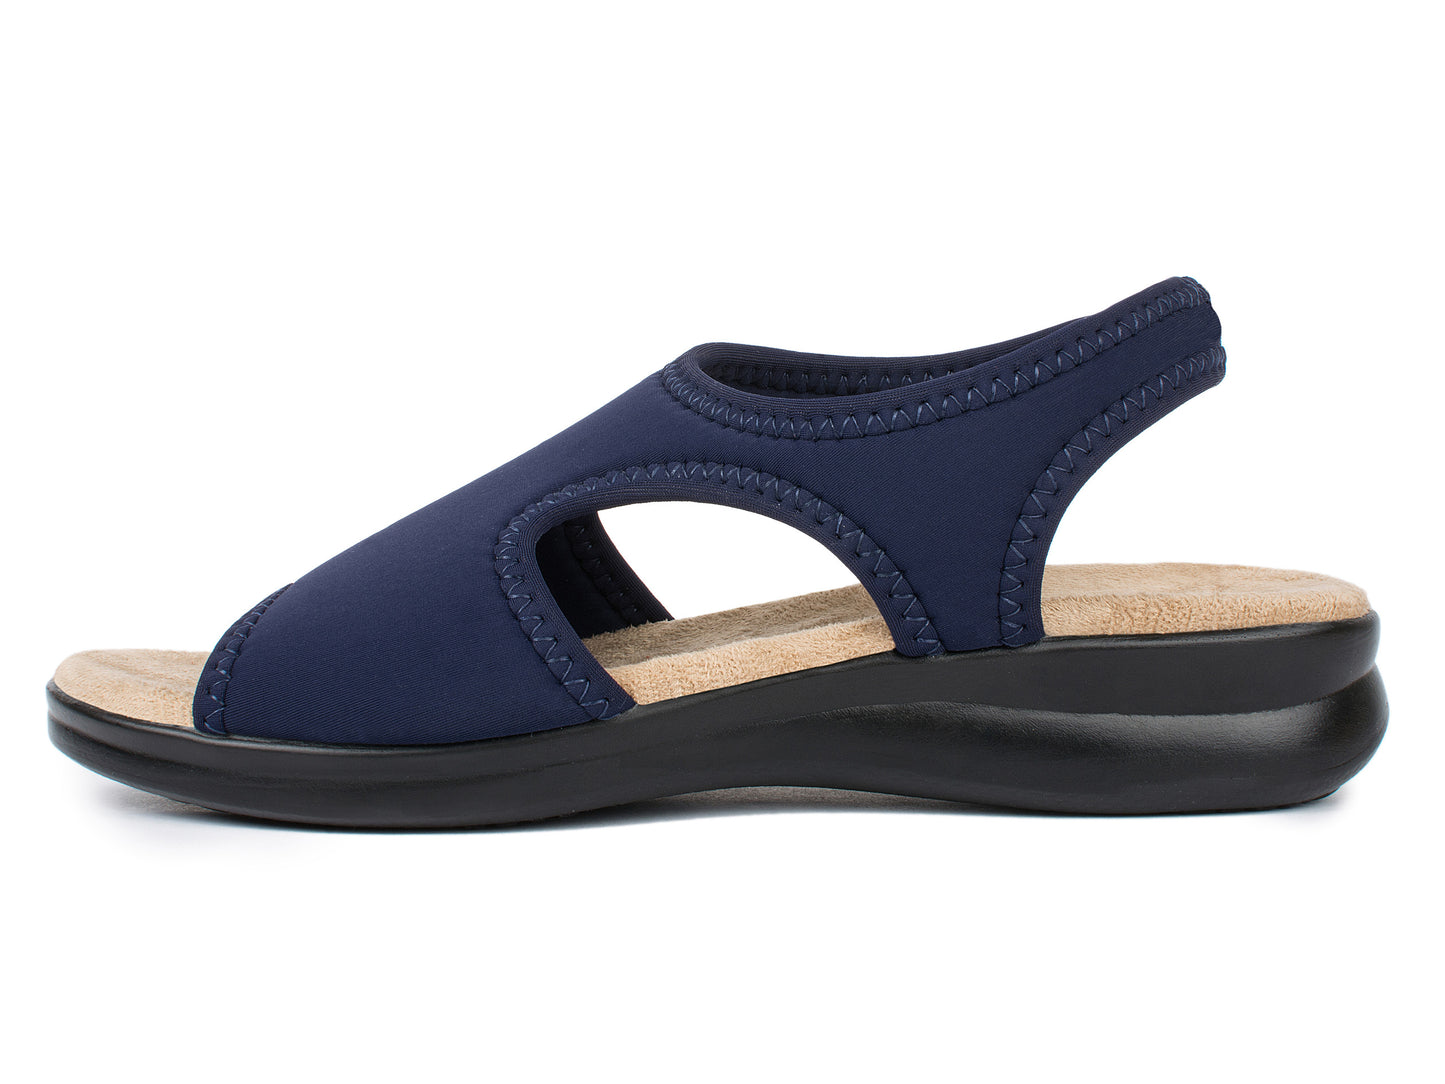 Damen Stretch Sandalette Modell Stretch 05 von Aerosoft in Farbe blau mit der linken Außenseite des Schuhs